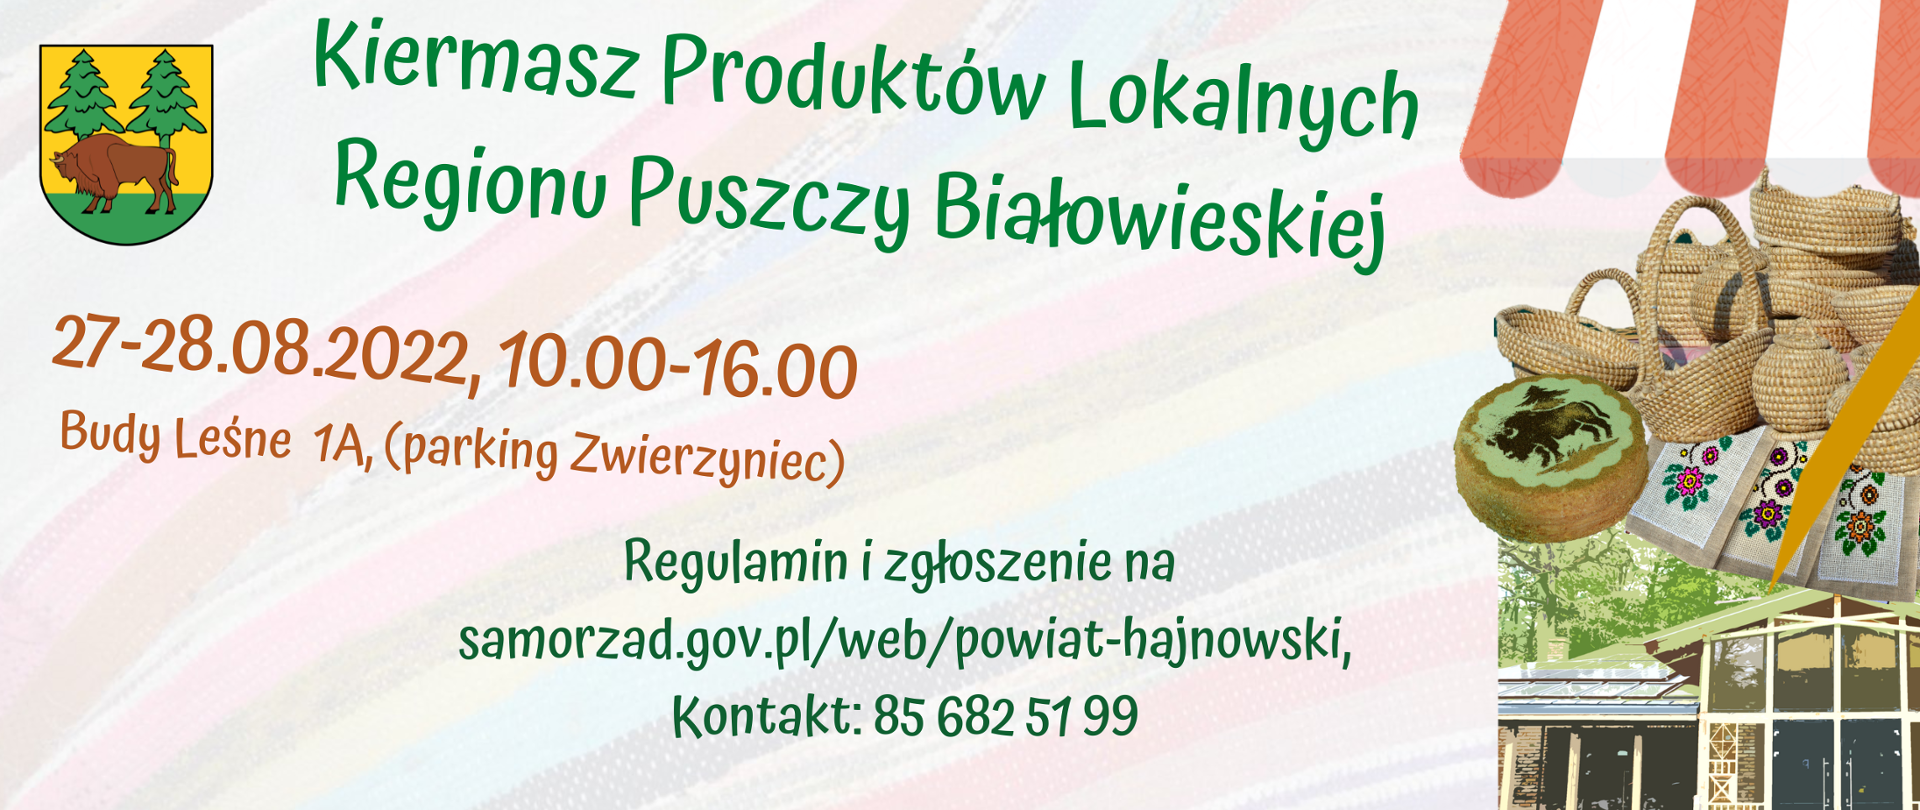 Kiermasz Produktów Lokalnych Regionu Puszczy Białowieskiej, 27-28.08. 2022 Budy Leśne 1A 